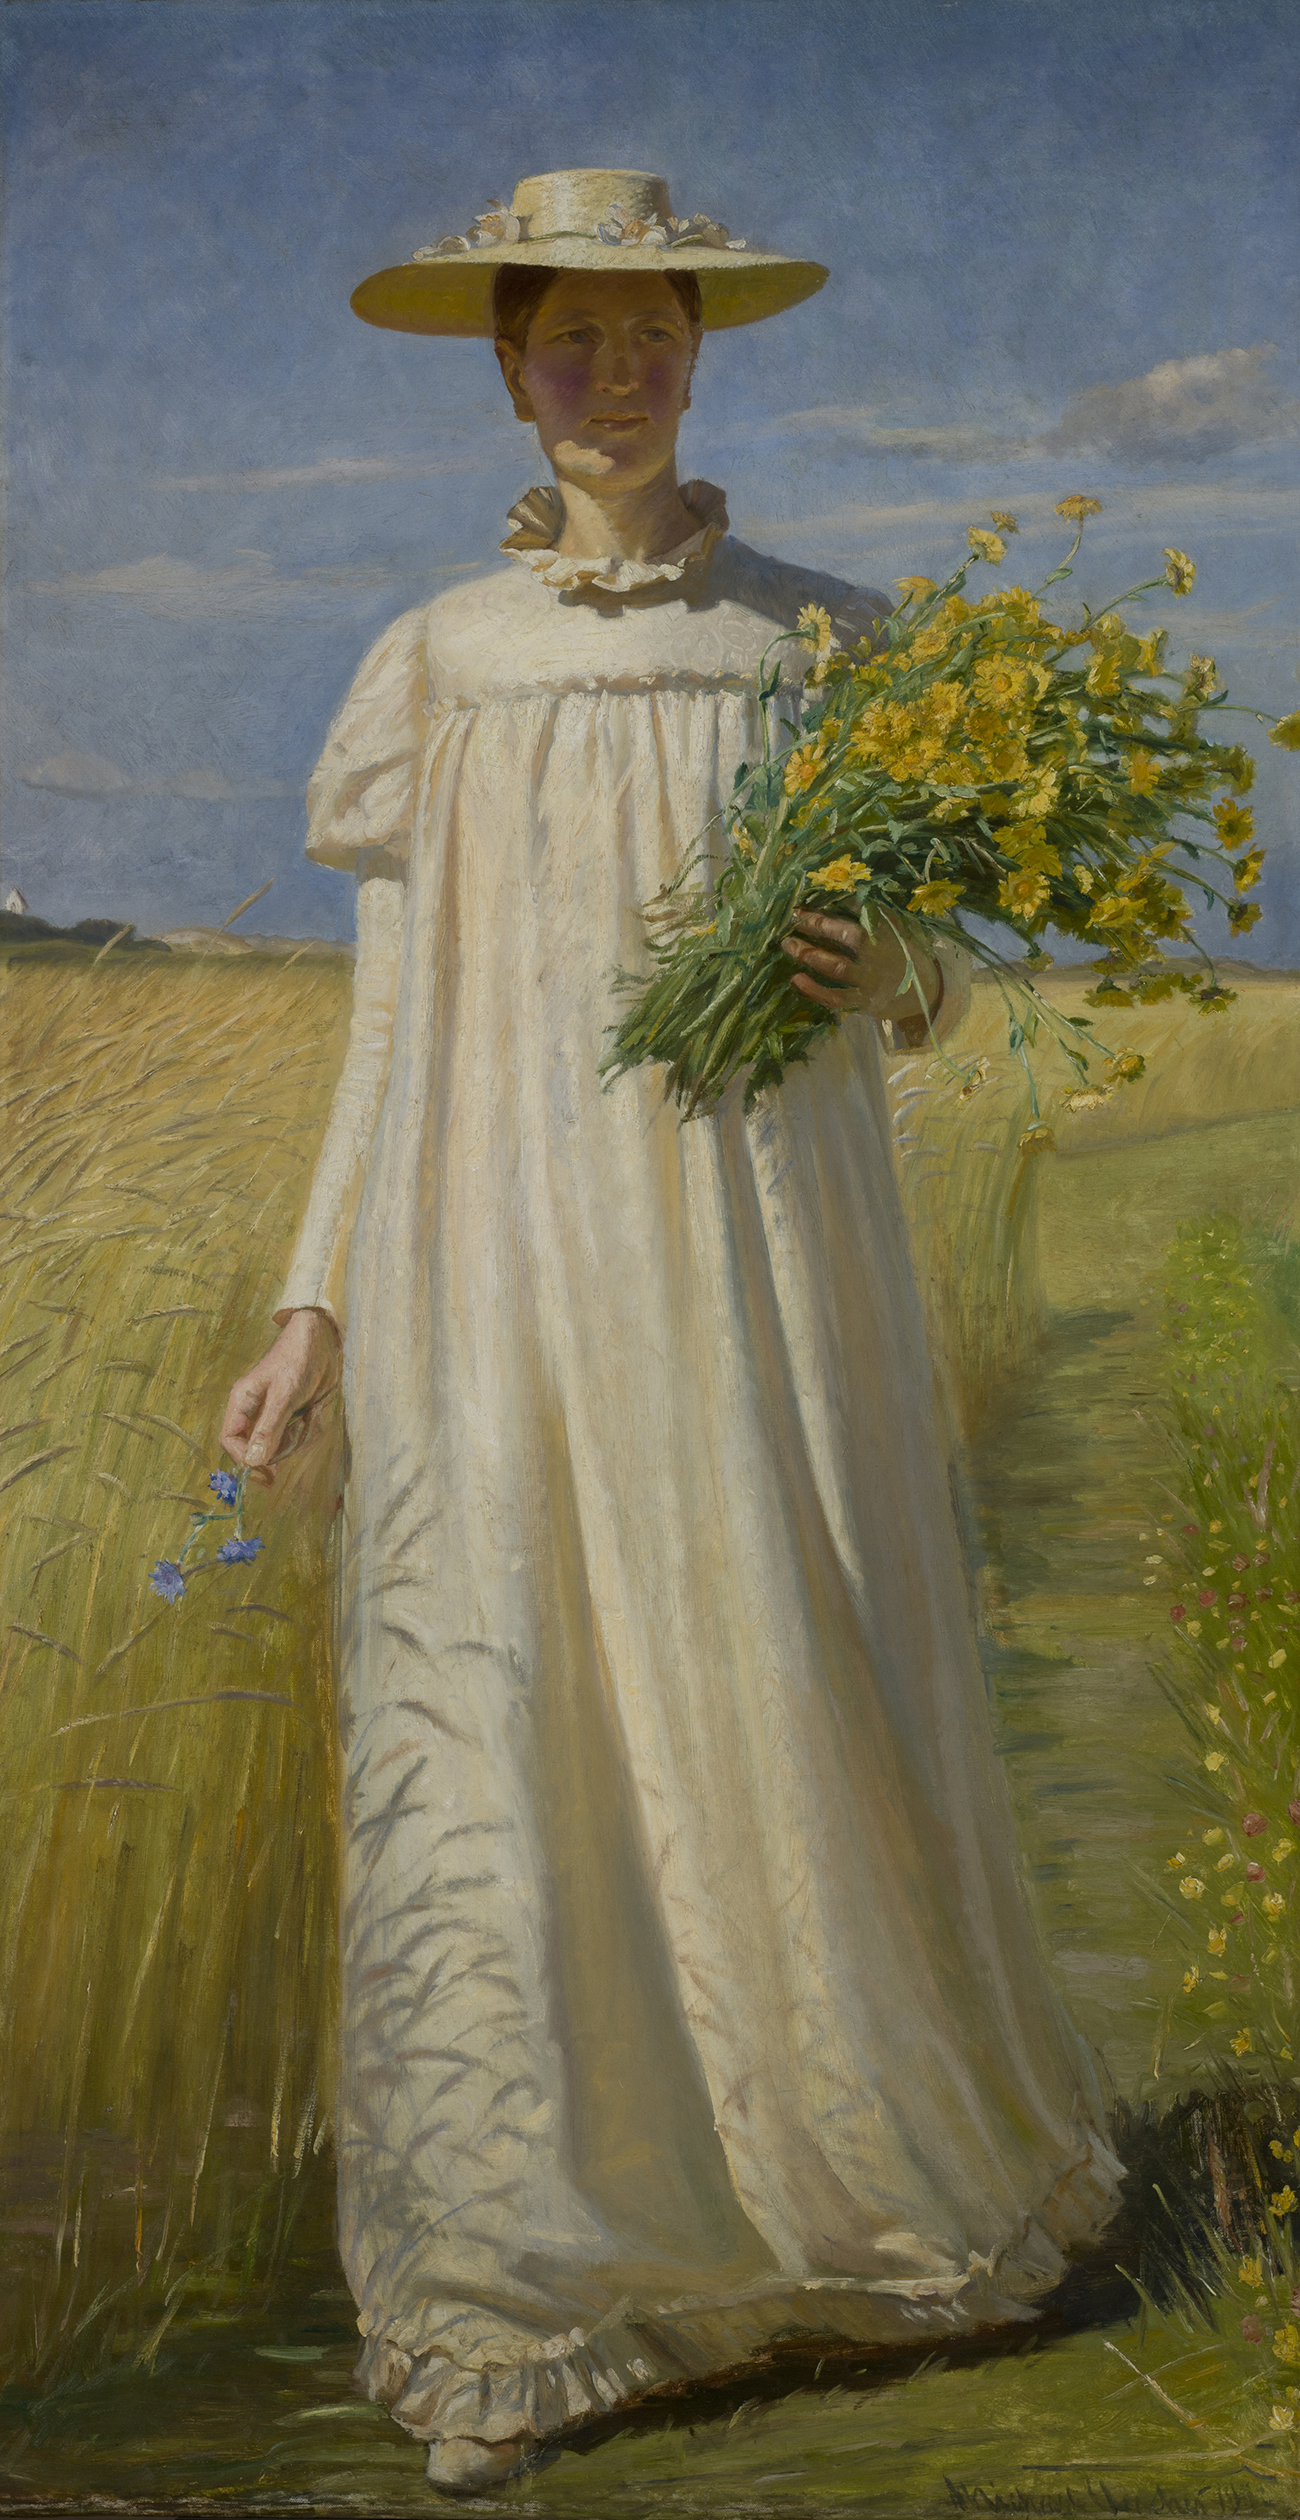 安娜安契爾從田野歸來 by Michael Ancher - 西元1902 - 64 x 55 公分 